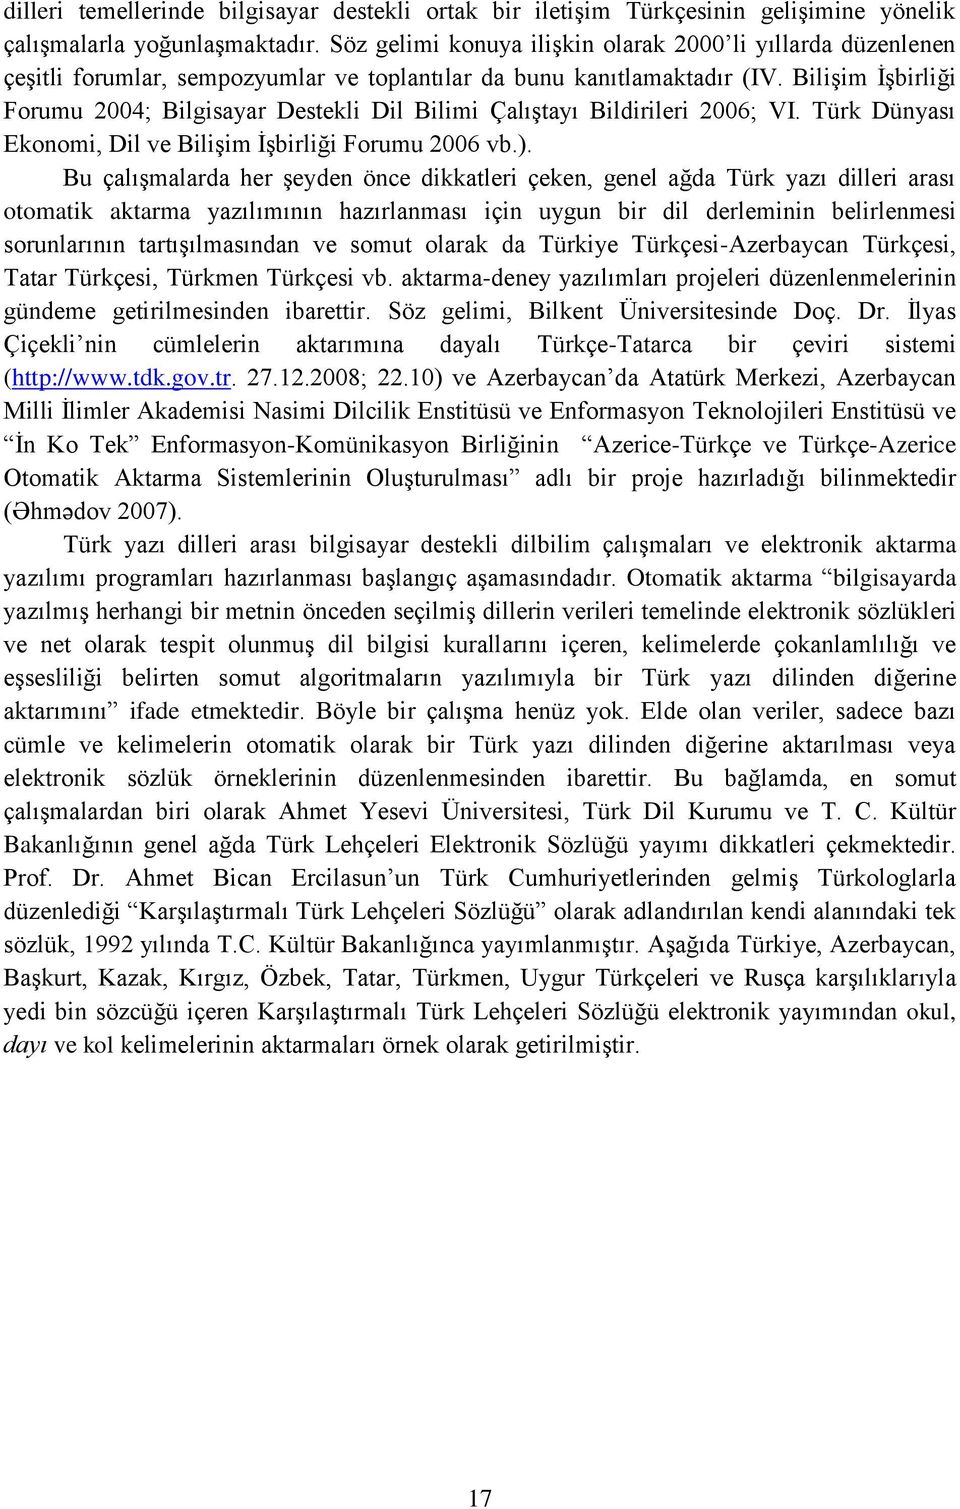 Bilişim İşbirliği Forumu 2004; Bilgisayar Destekli Dil Bilimi Çalıştayı Bildirileri 2006; VI. Türk Dünyası Ekonomi, Dil ve Bilişim İşbirliği Forumu 2006 vb.).